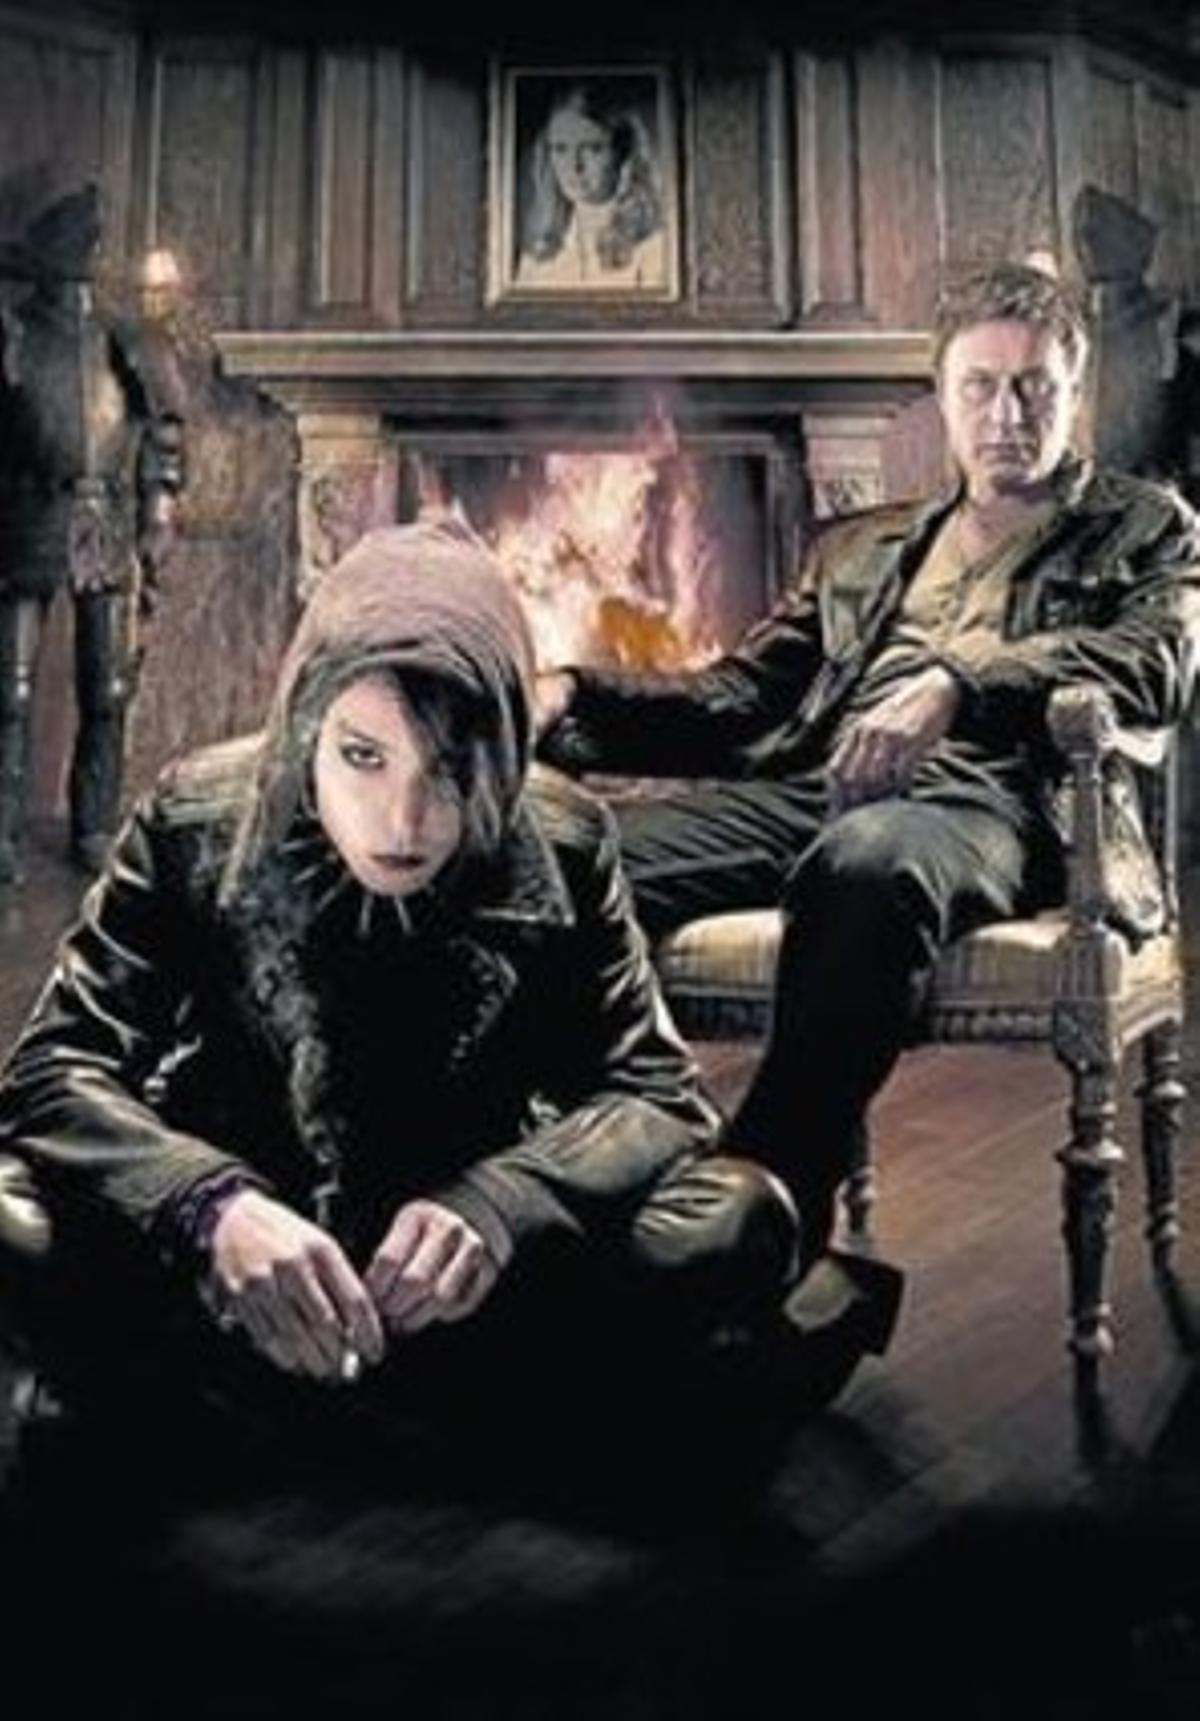 Los actores Michael Nyqvist y Noomi Rapace, Lisbeth Salander y Mikael Blomkvist en la versión cinematográfica sueca de ’Millennium’.